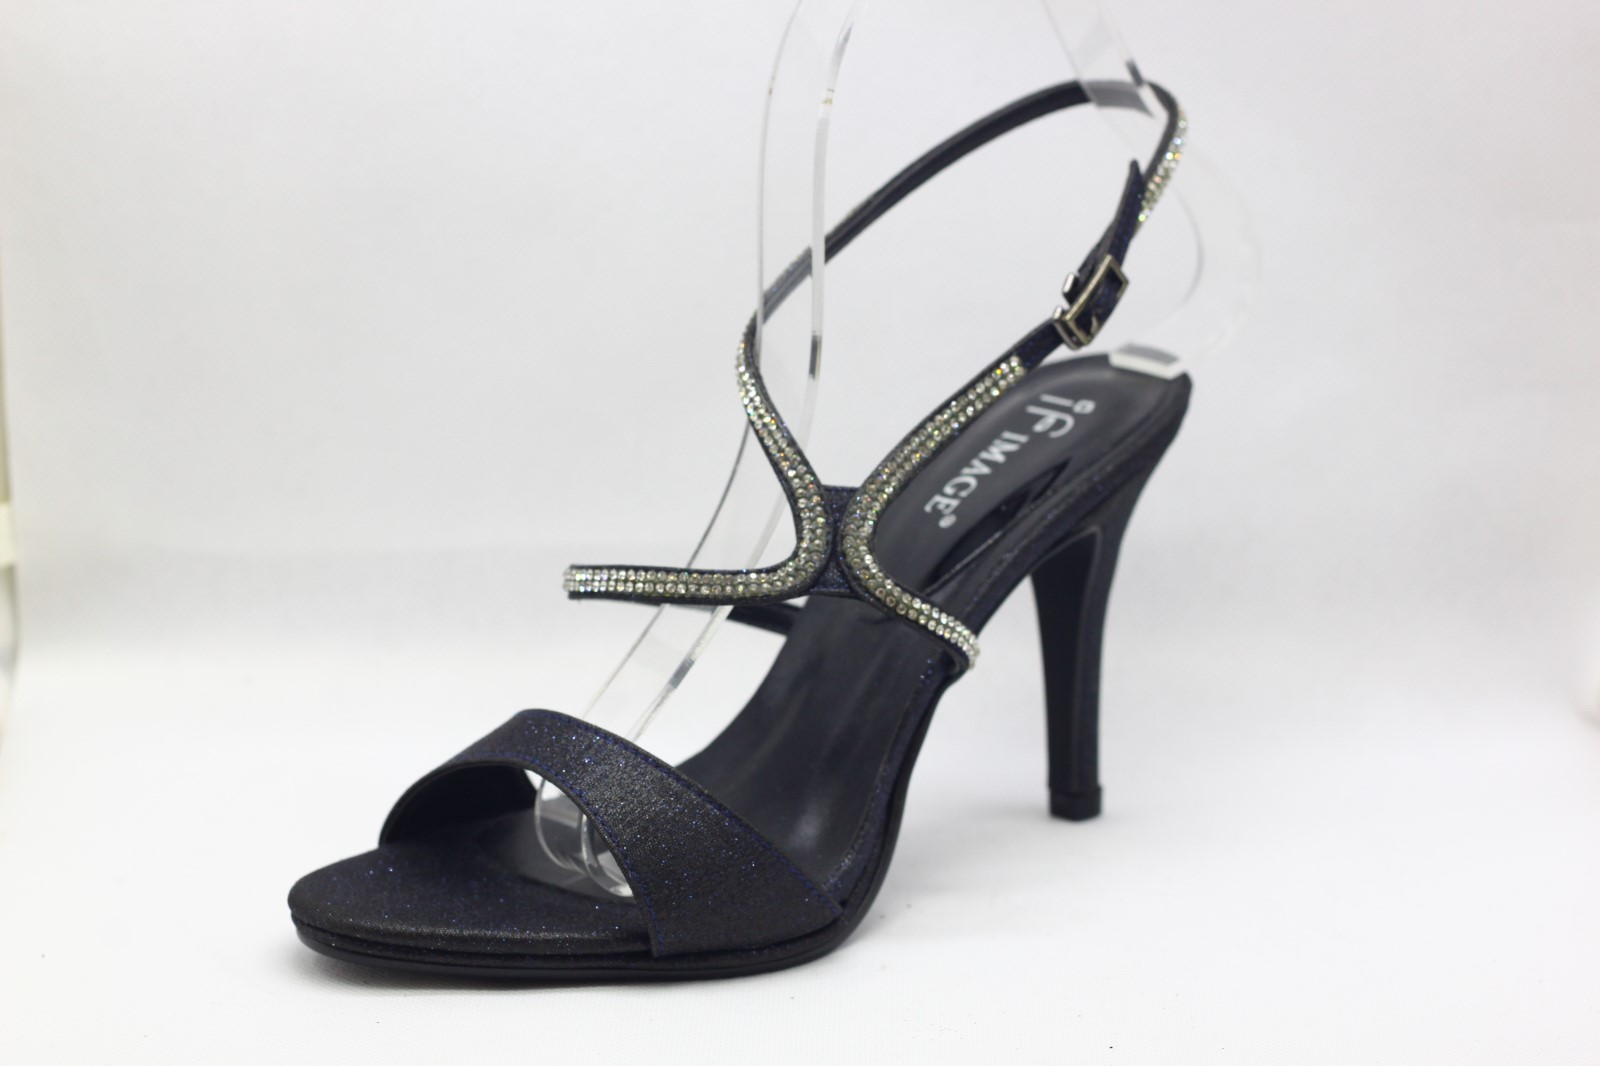 2.8 inch heels